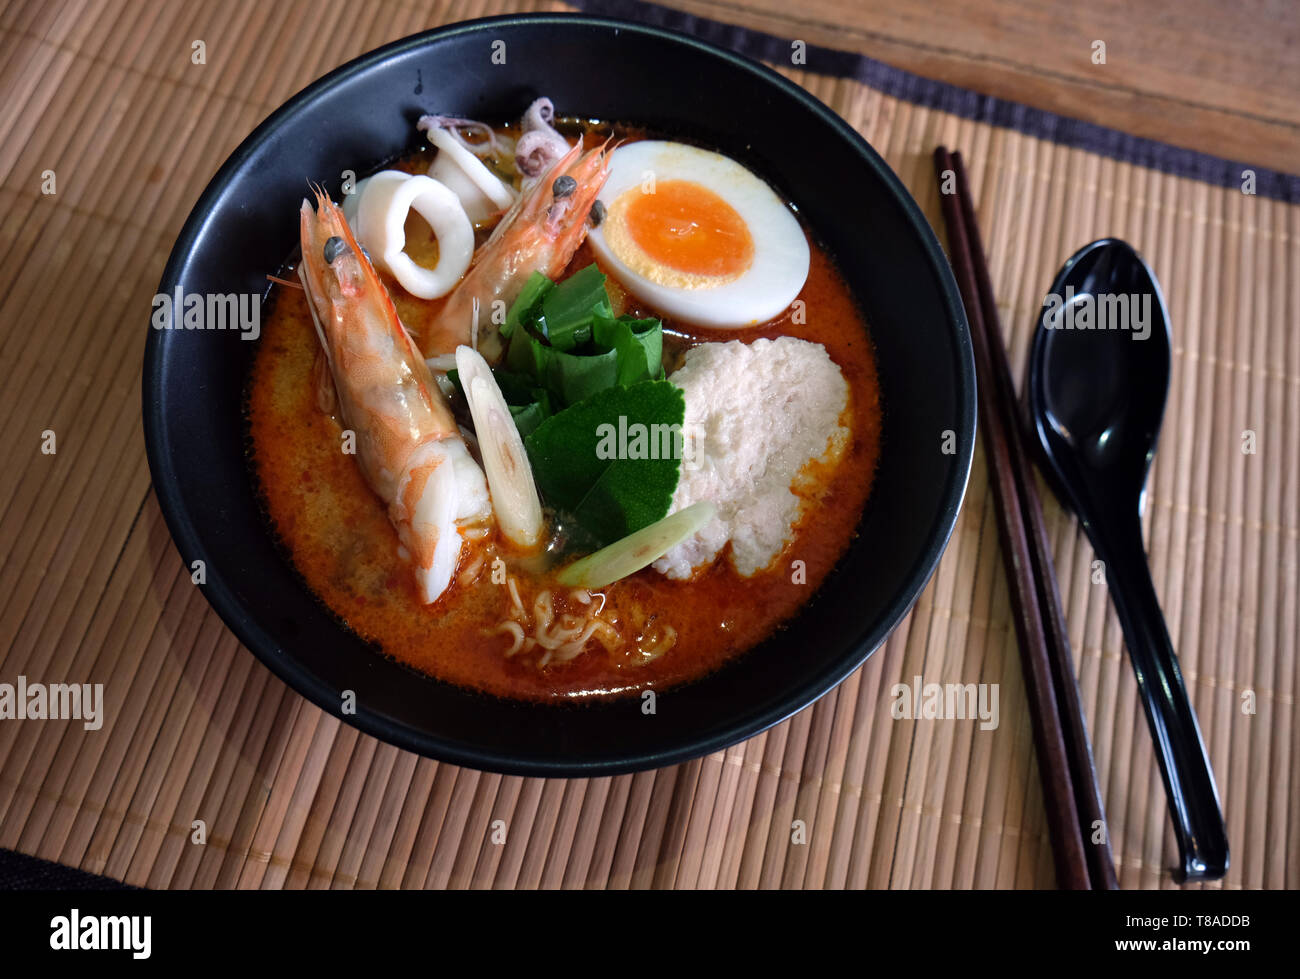 Tom Yum kung (cuisine thaï),Tom Yum Kung soupe de fruits de mer avec des nouilles. Tom Yam est une soupe épicée en Thaïlande typique Banque D'Images